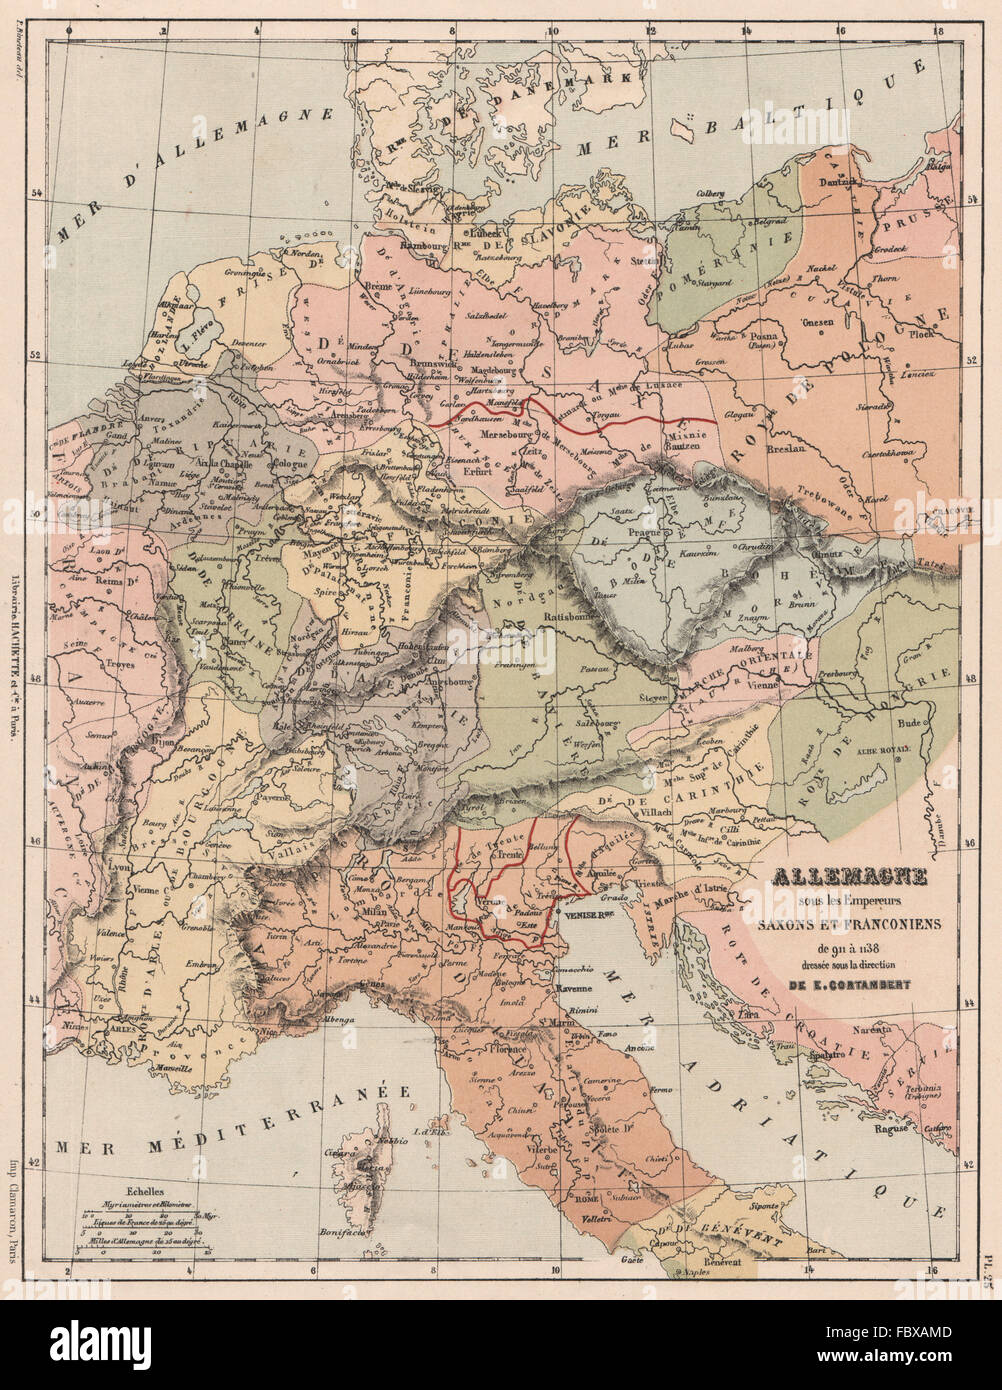 HEILIGEN RÖMISCHEN REICHES. Deutschland unter Saxon & fränkischen Kaiser 911-1138, 1880 Karte Stockfoto